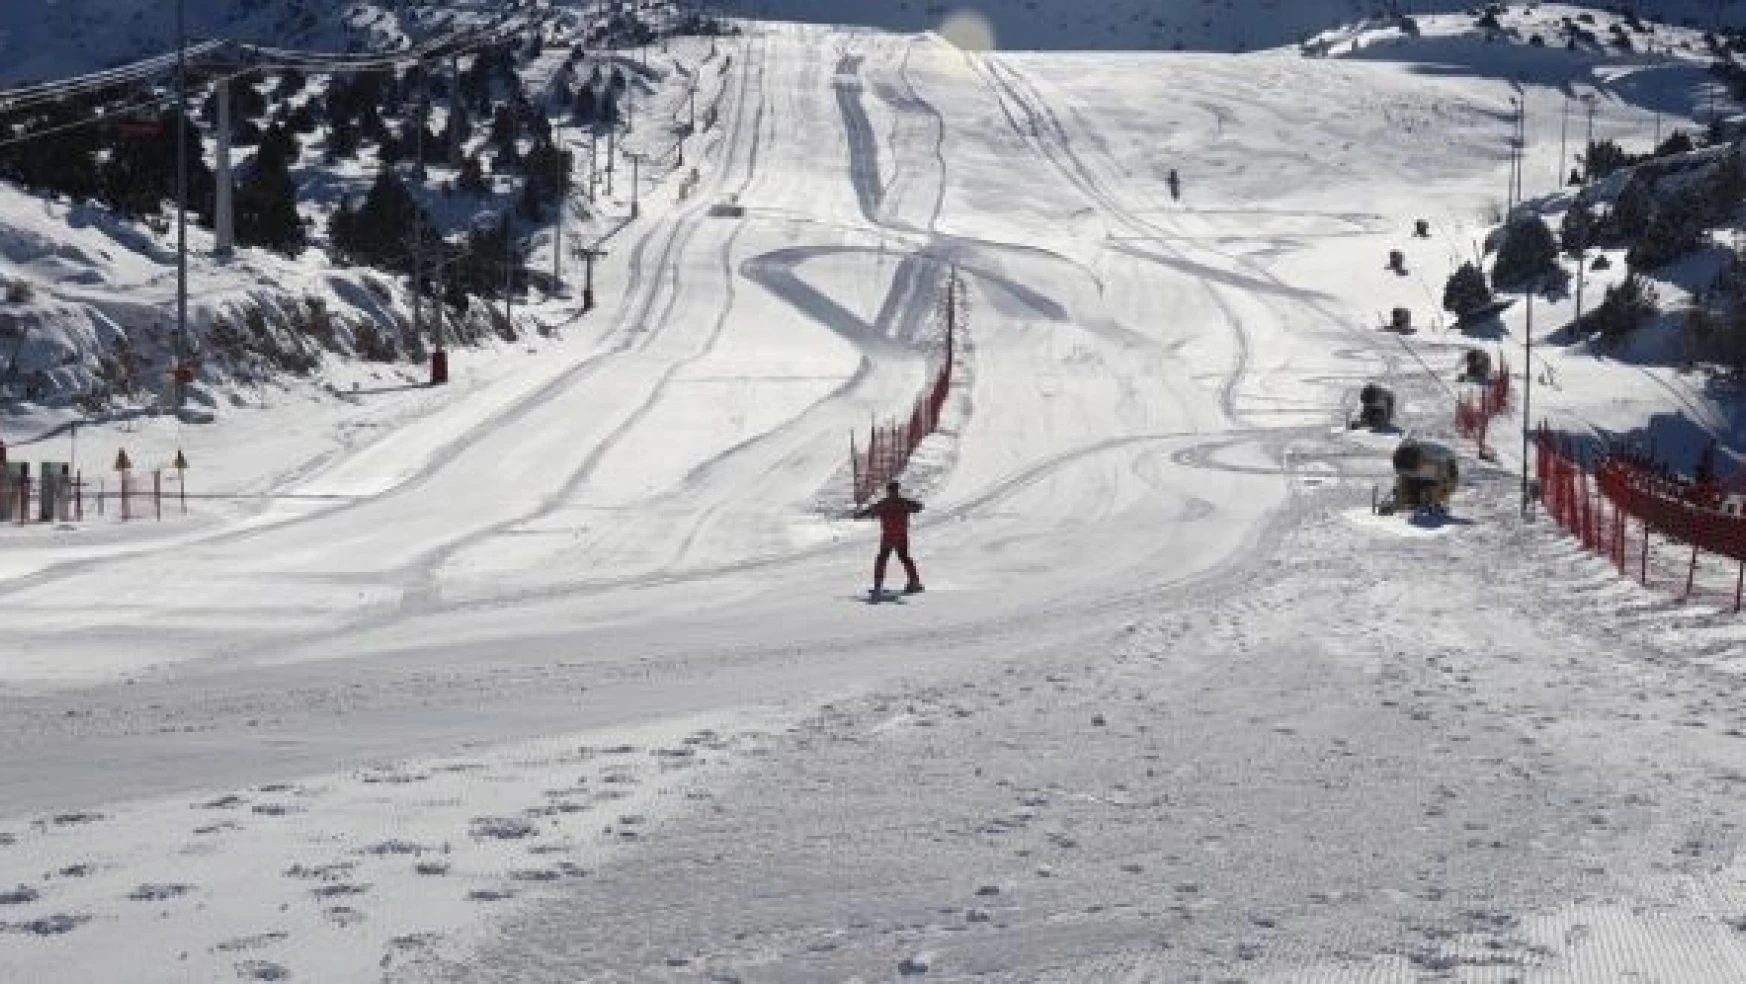 Ergan Dağı Kayak Merkezi'nde kayak sezonu açılıyor